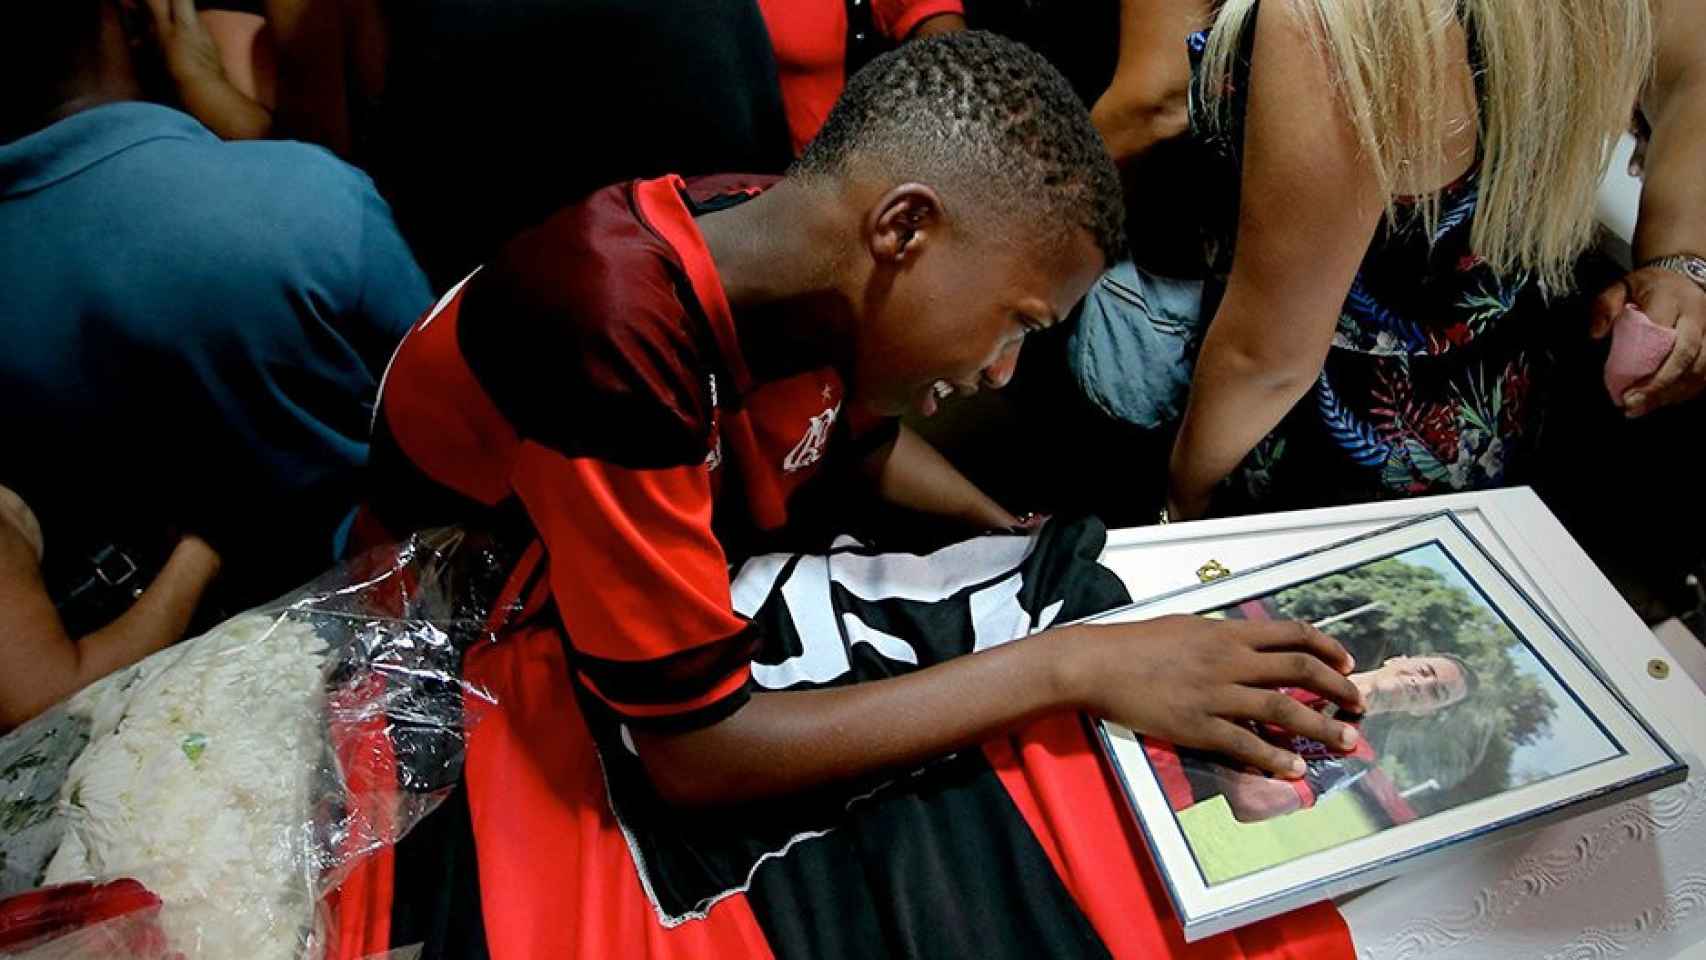 Vinicius Vital llora durante el funeral de su amigo Arthur Vinicius, uno de los diez jóvenes futbolistas que perdieron la vida en el incendio en las instalaciones del Flamengo / EFE